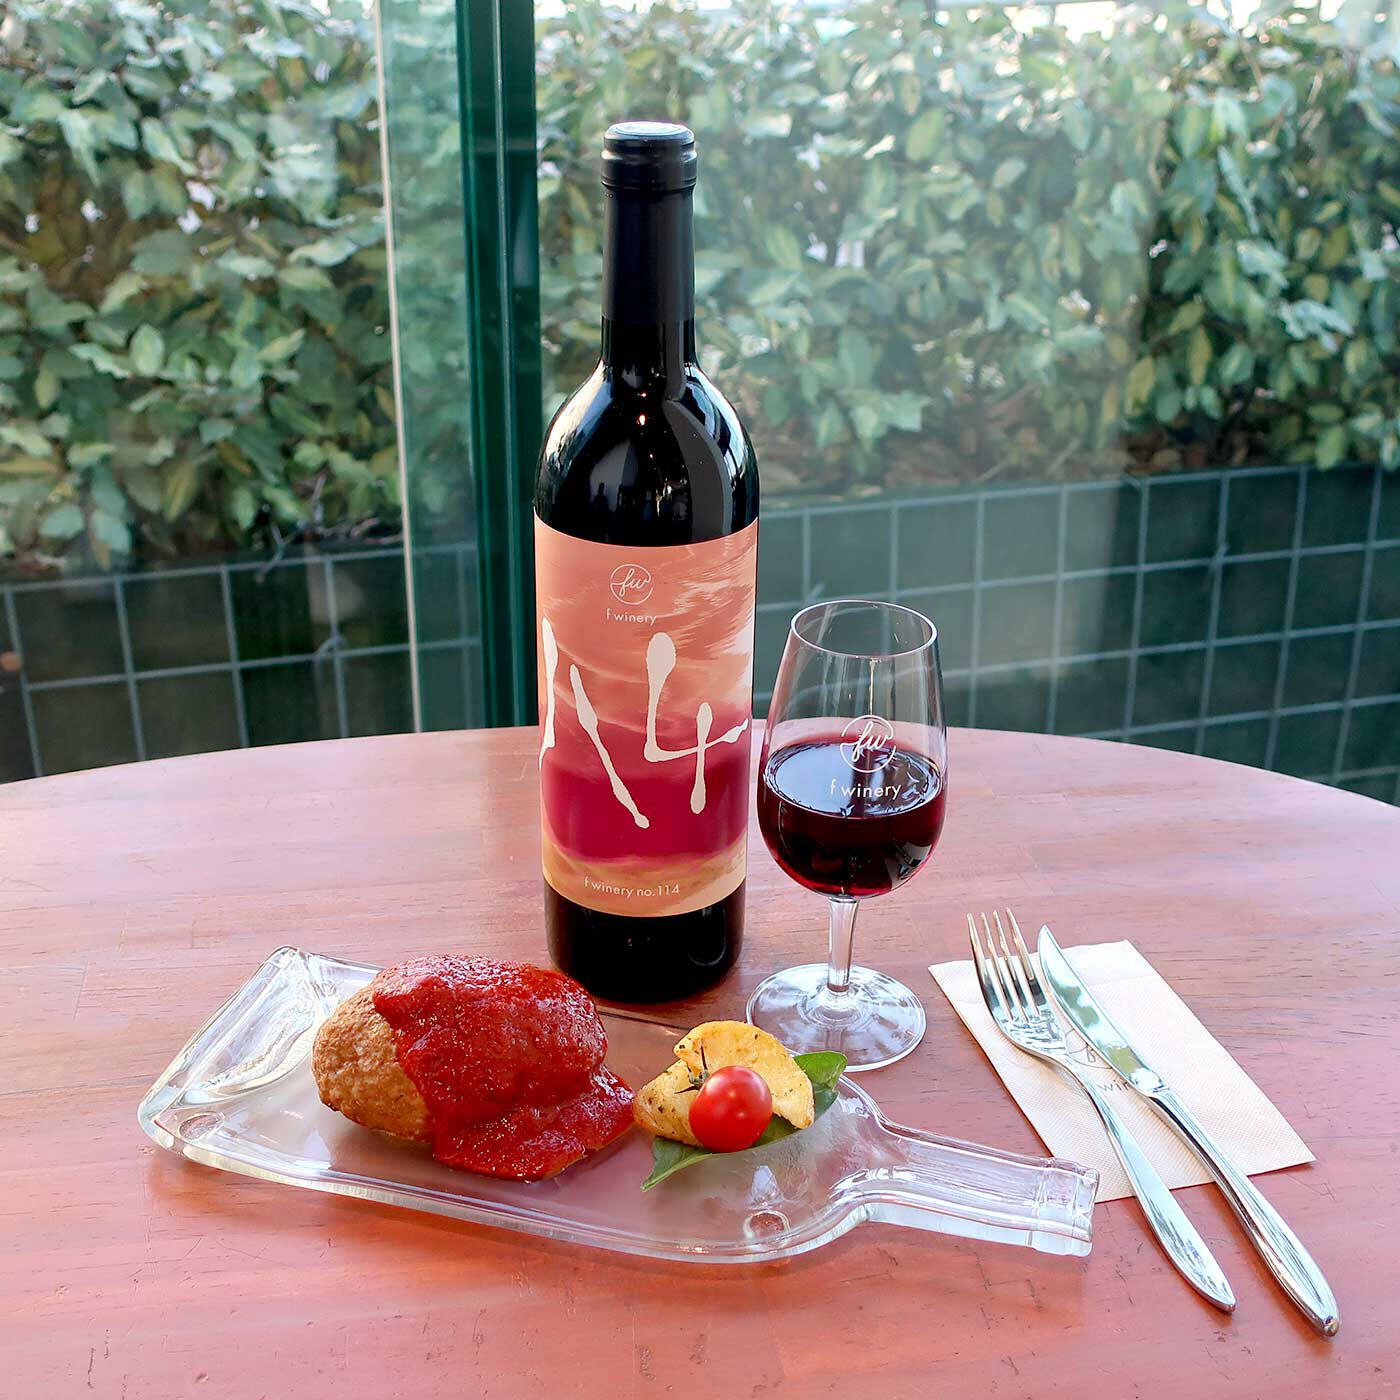 フェリシモコネクション|f winery114　メルロー|トマトが良く効いた口の中でとろけるような肉料理がおすすめ。トマトソースたっぷりのハンバーグなど。